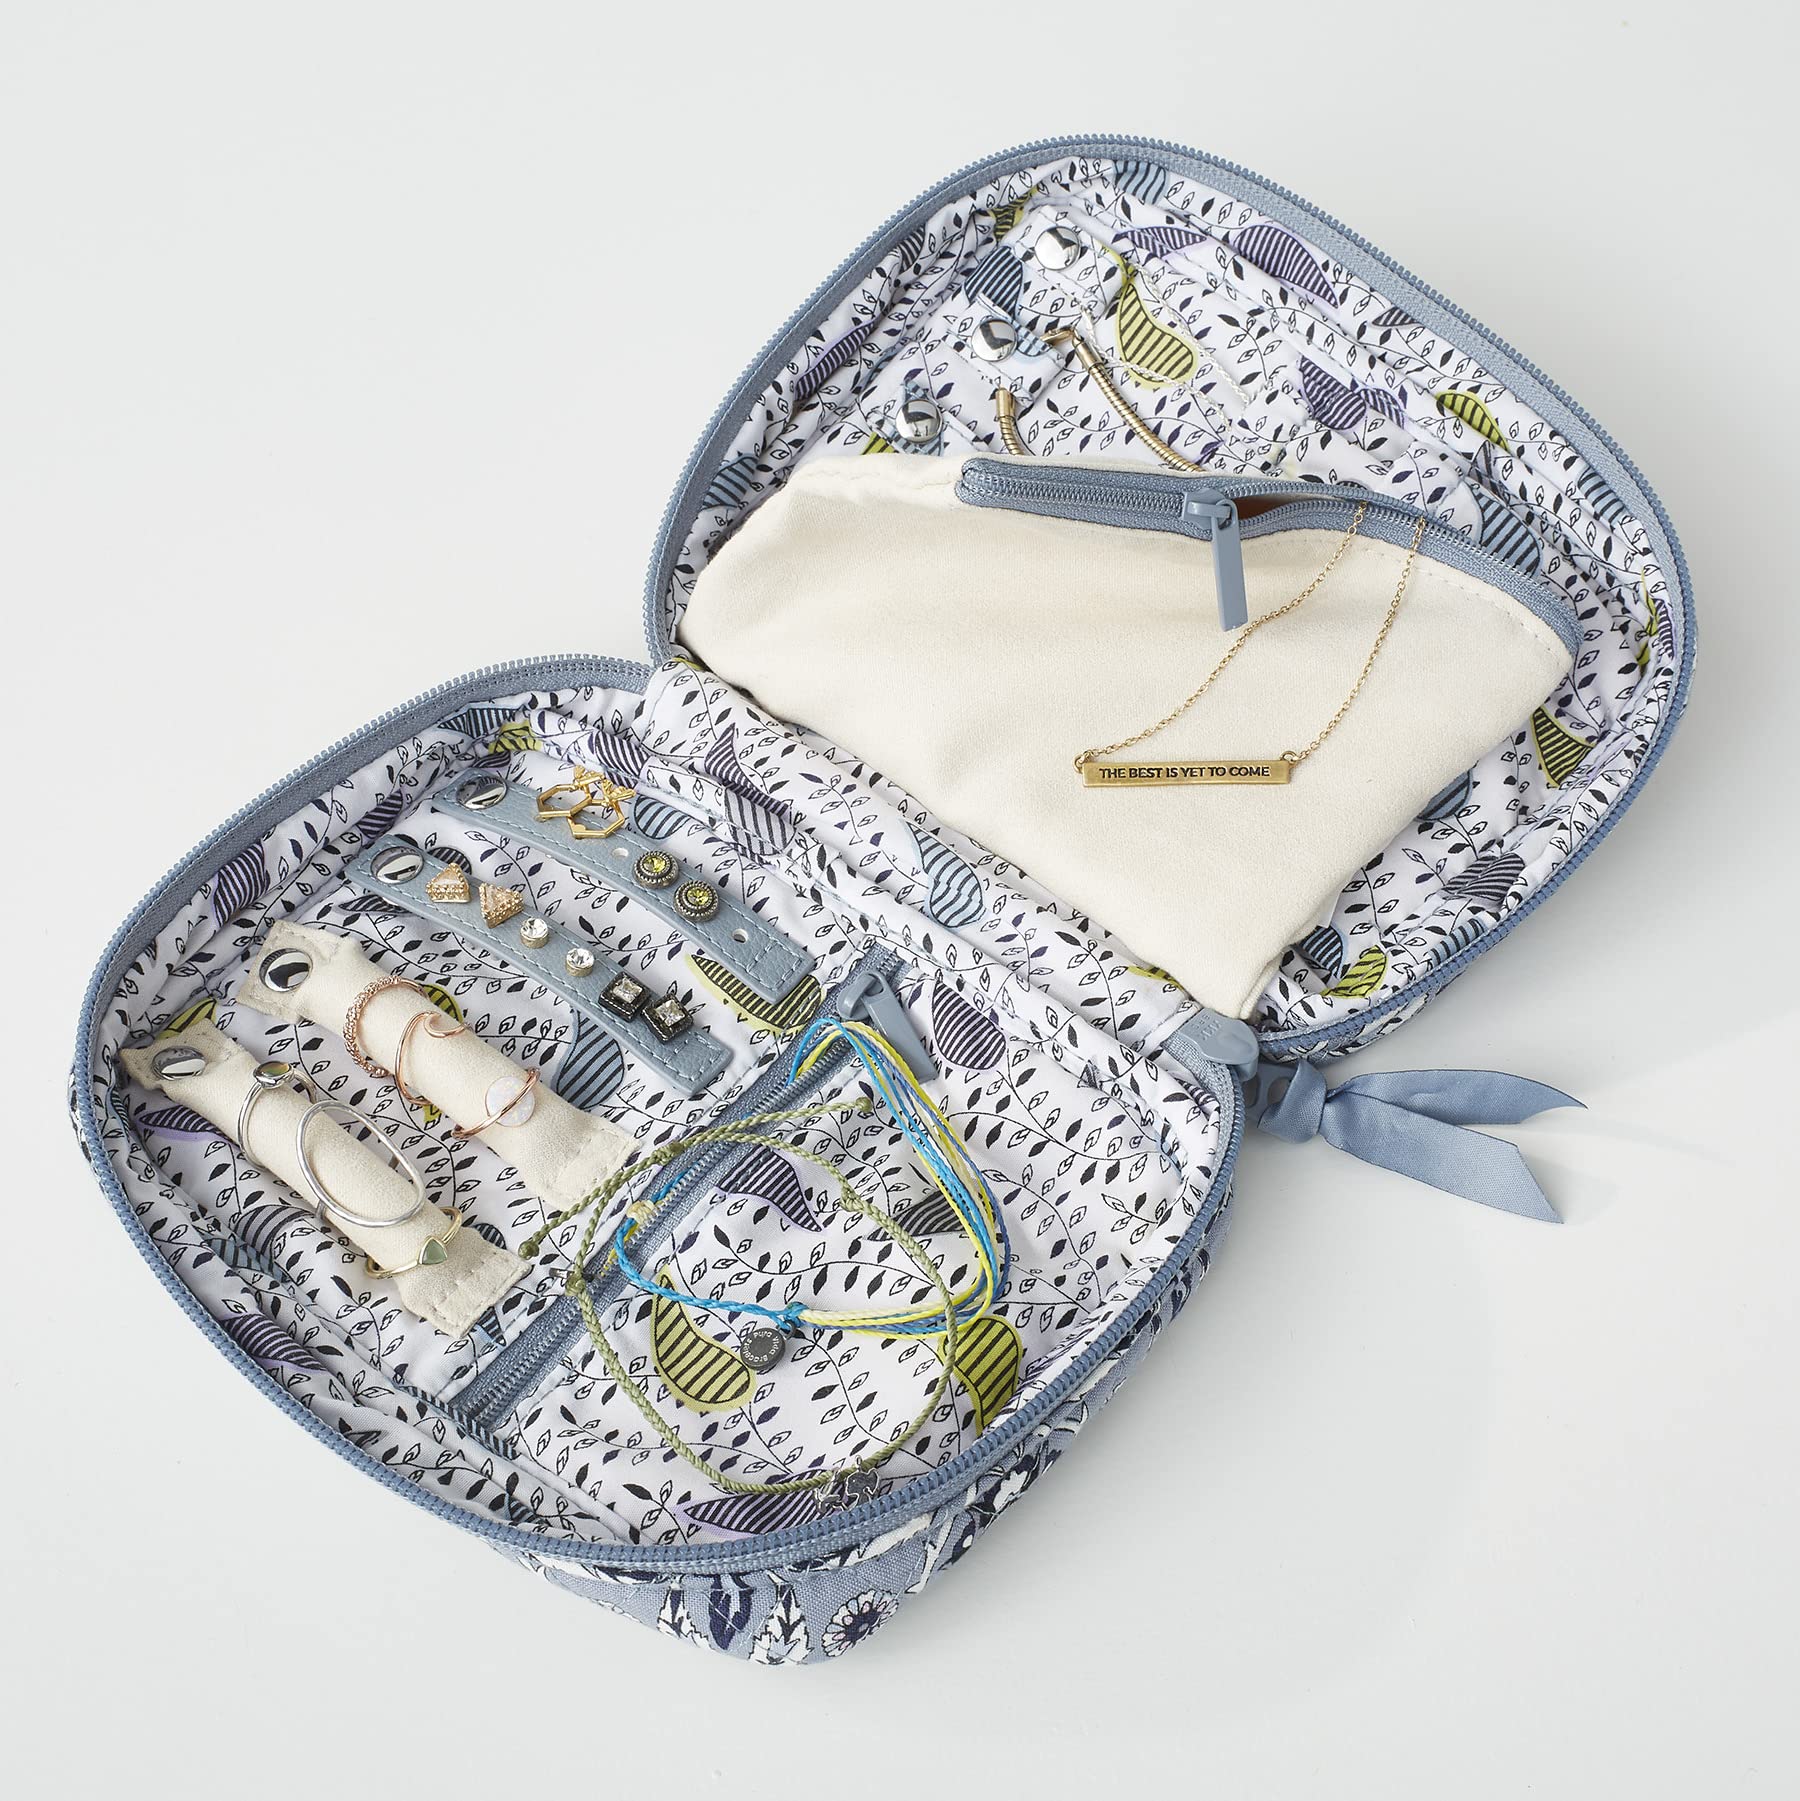 Vera Bradley Women's Cotton Zip-Around Jewelry Organizer Case Travel Accessory, Perennials Noir, One Size